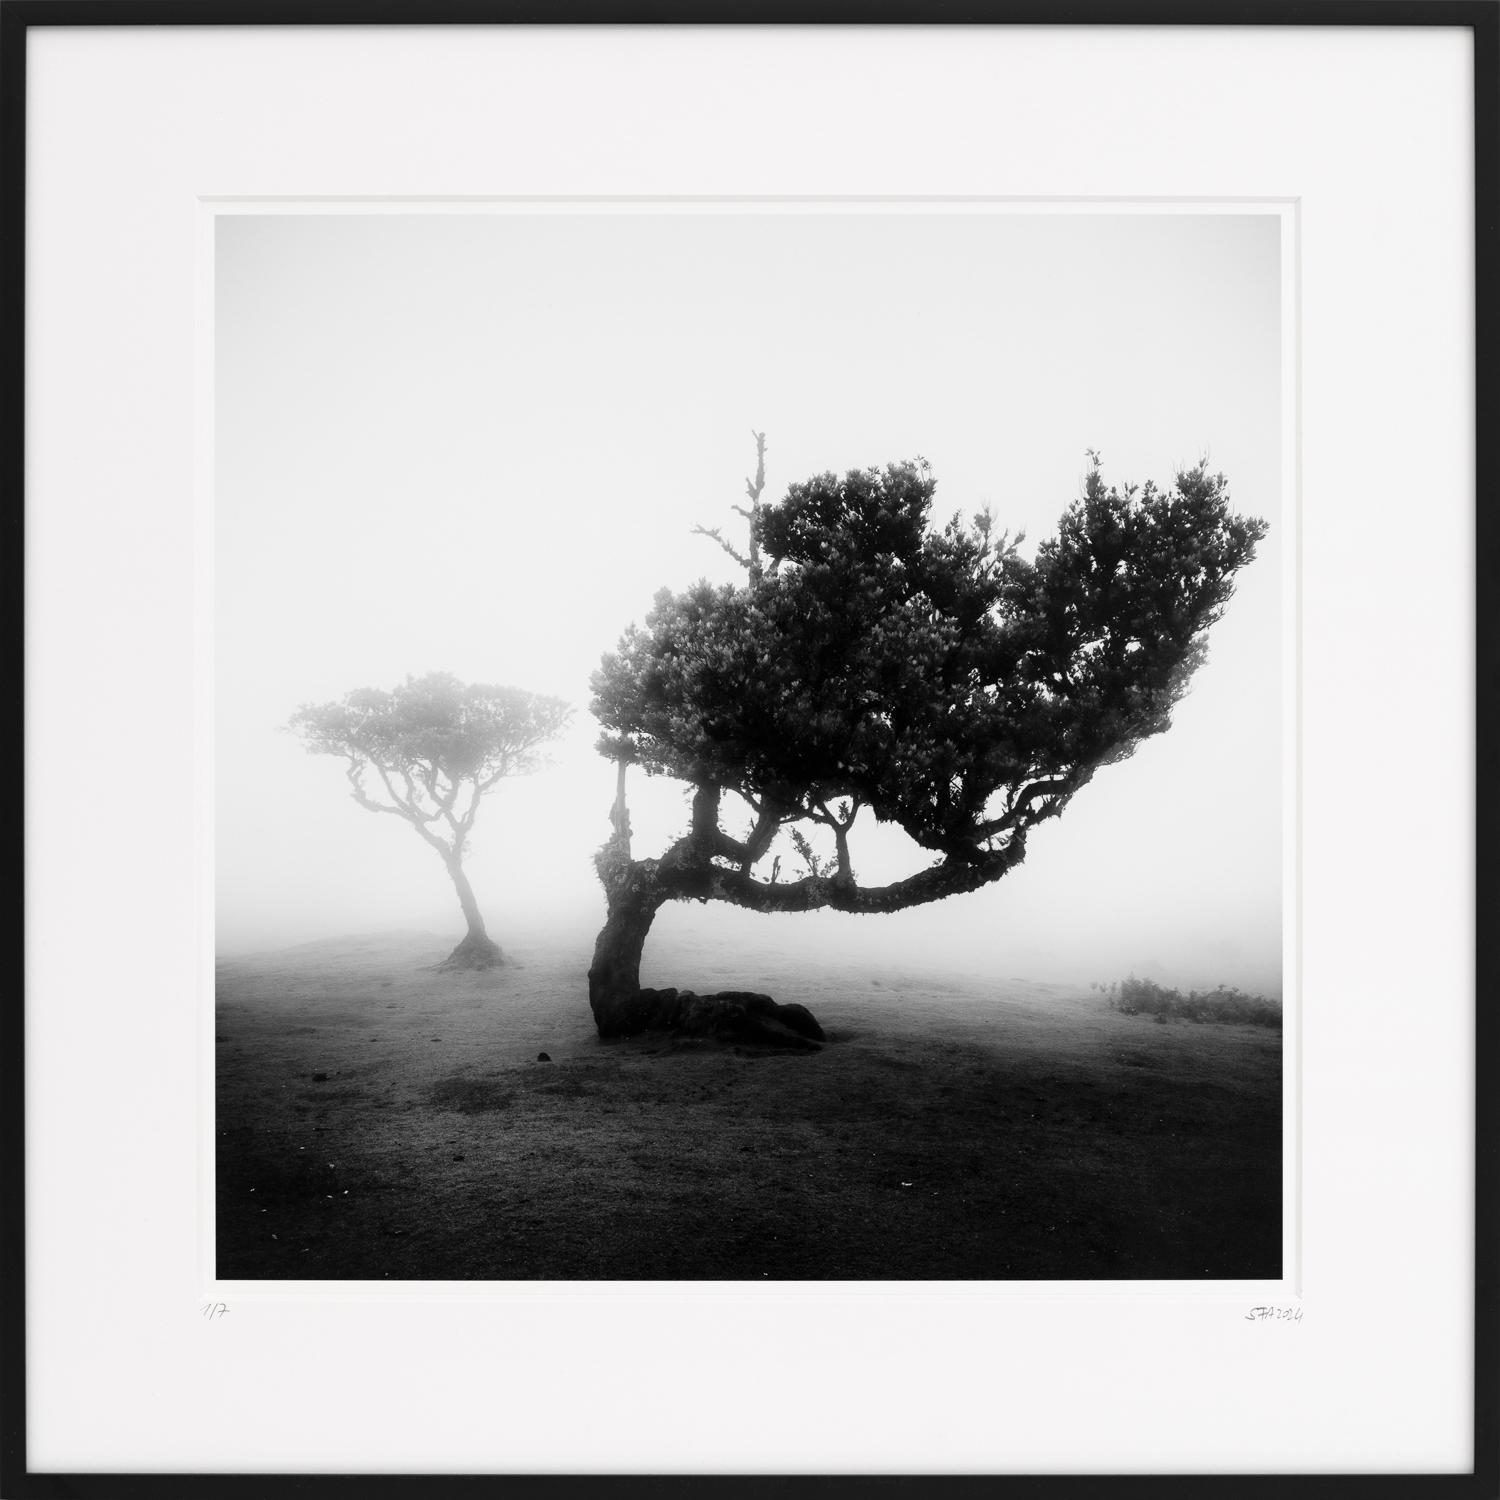 Landscape Photograph Gerald Berghammer -  Ancient Laurel Cloud Forest, photographie d'art en noir et blanc, paysage, encadré